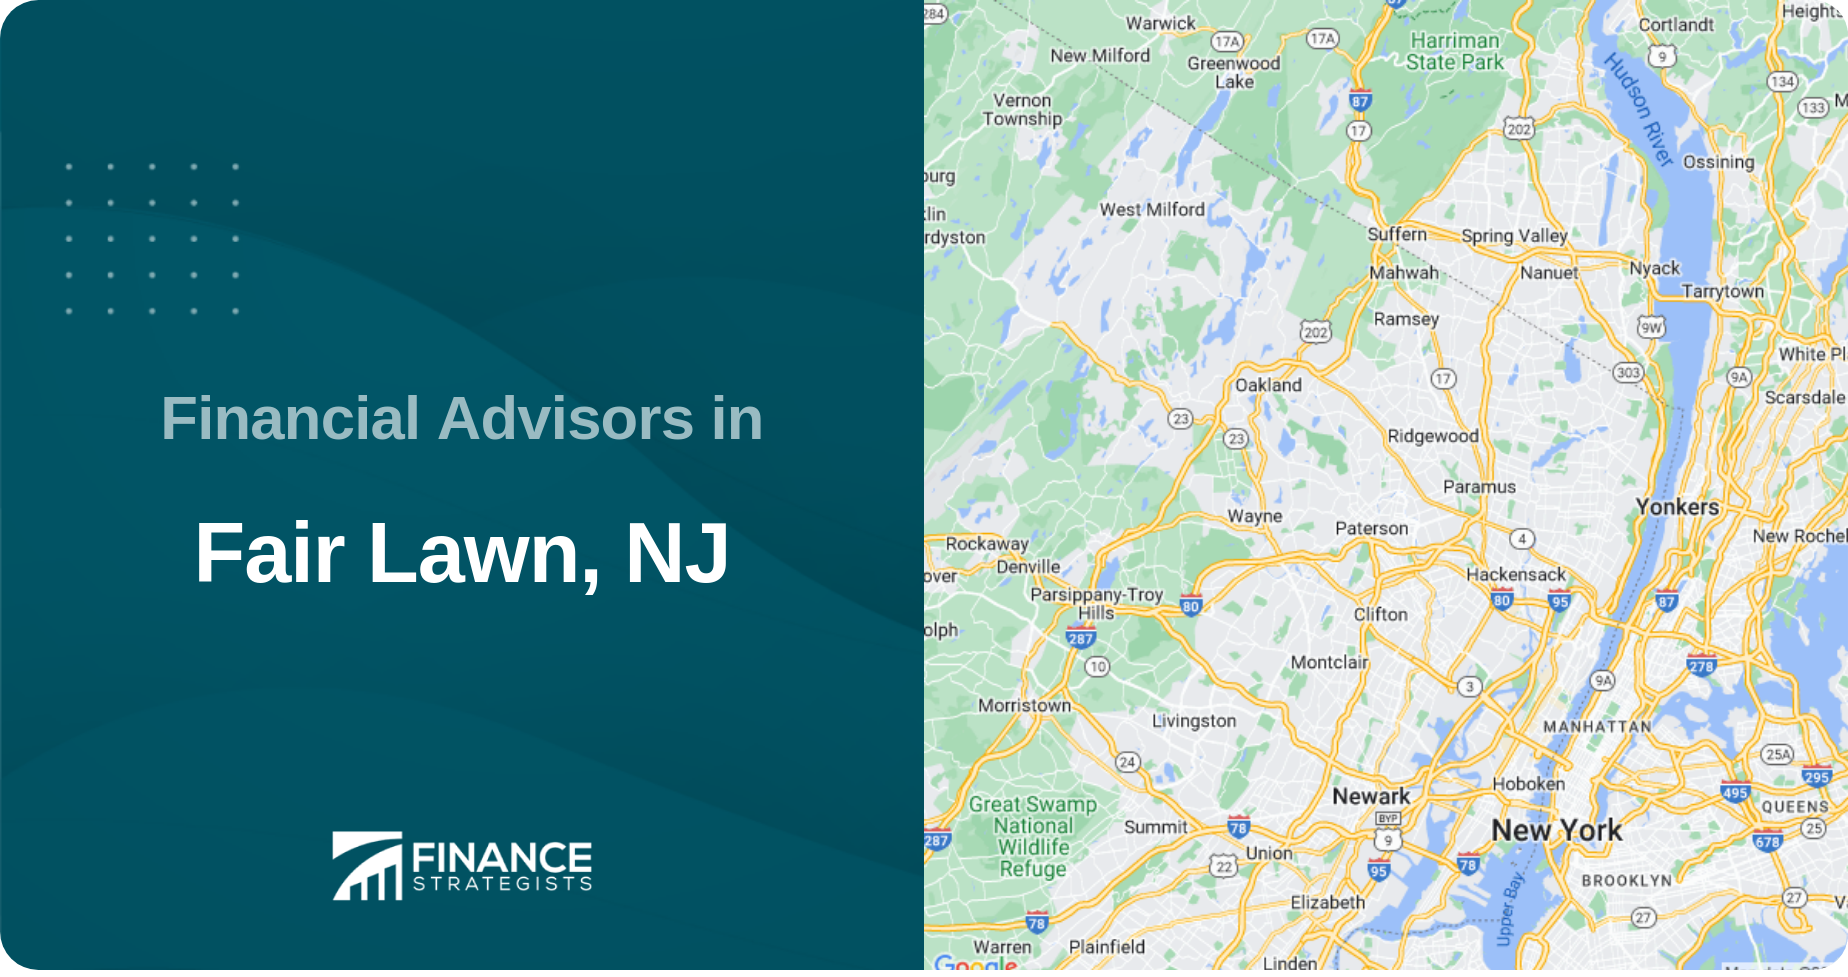 Financial Advisors in Fair Lawn, NJ